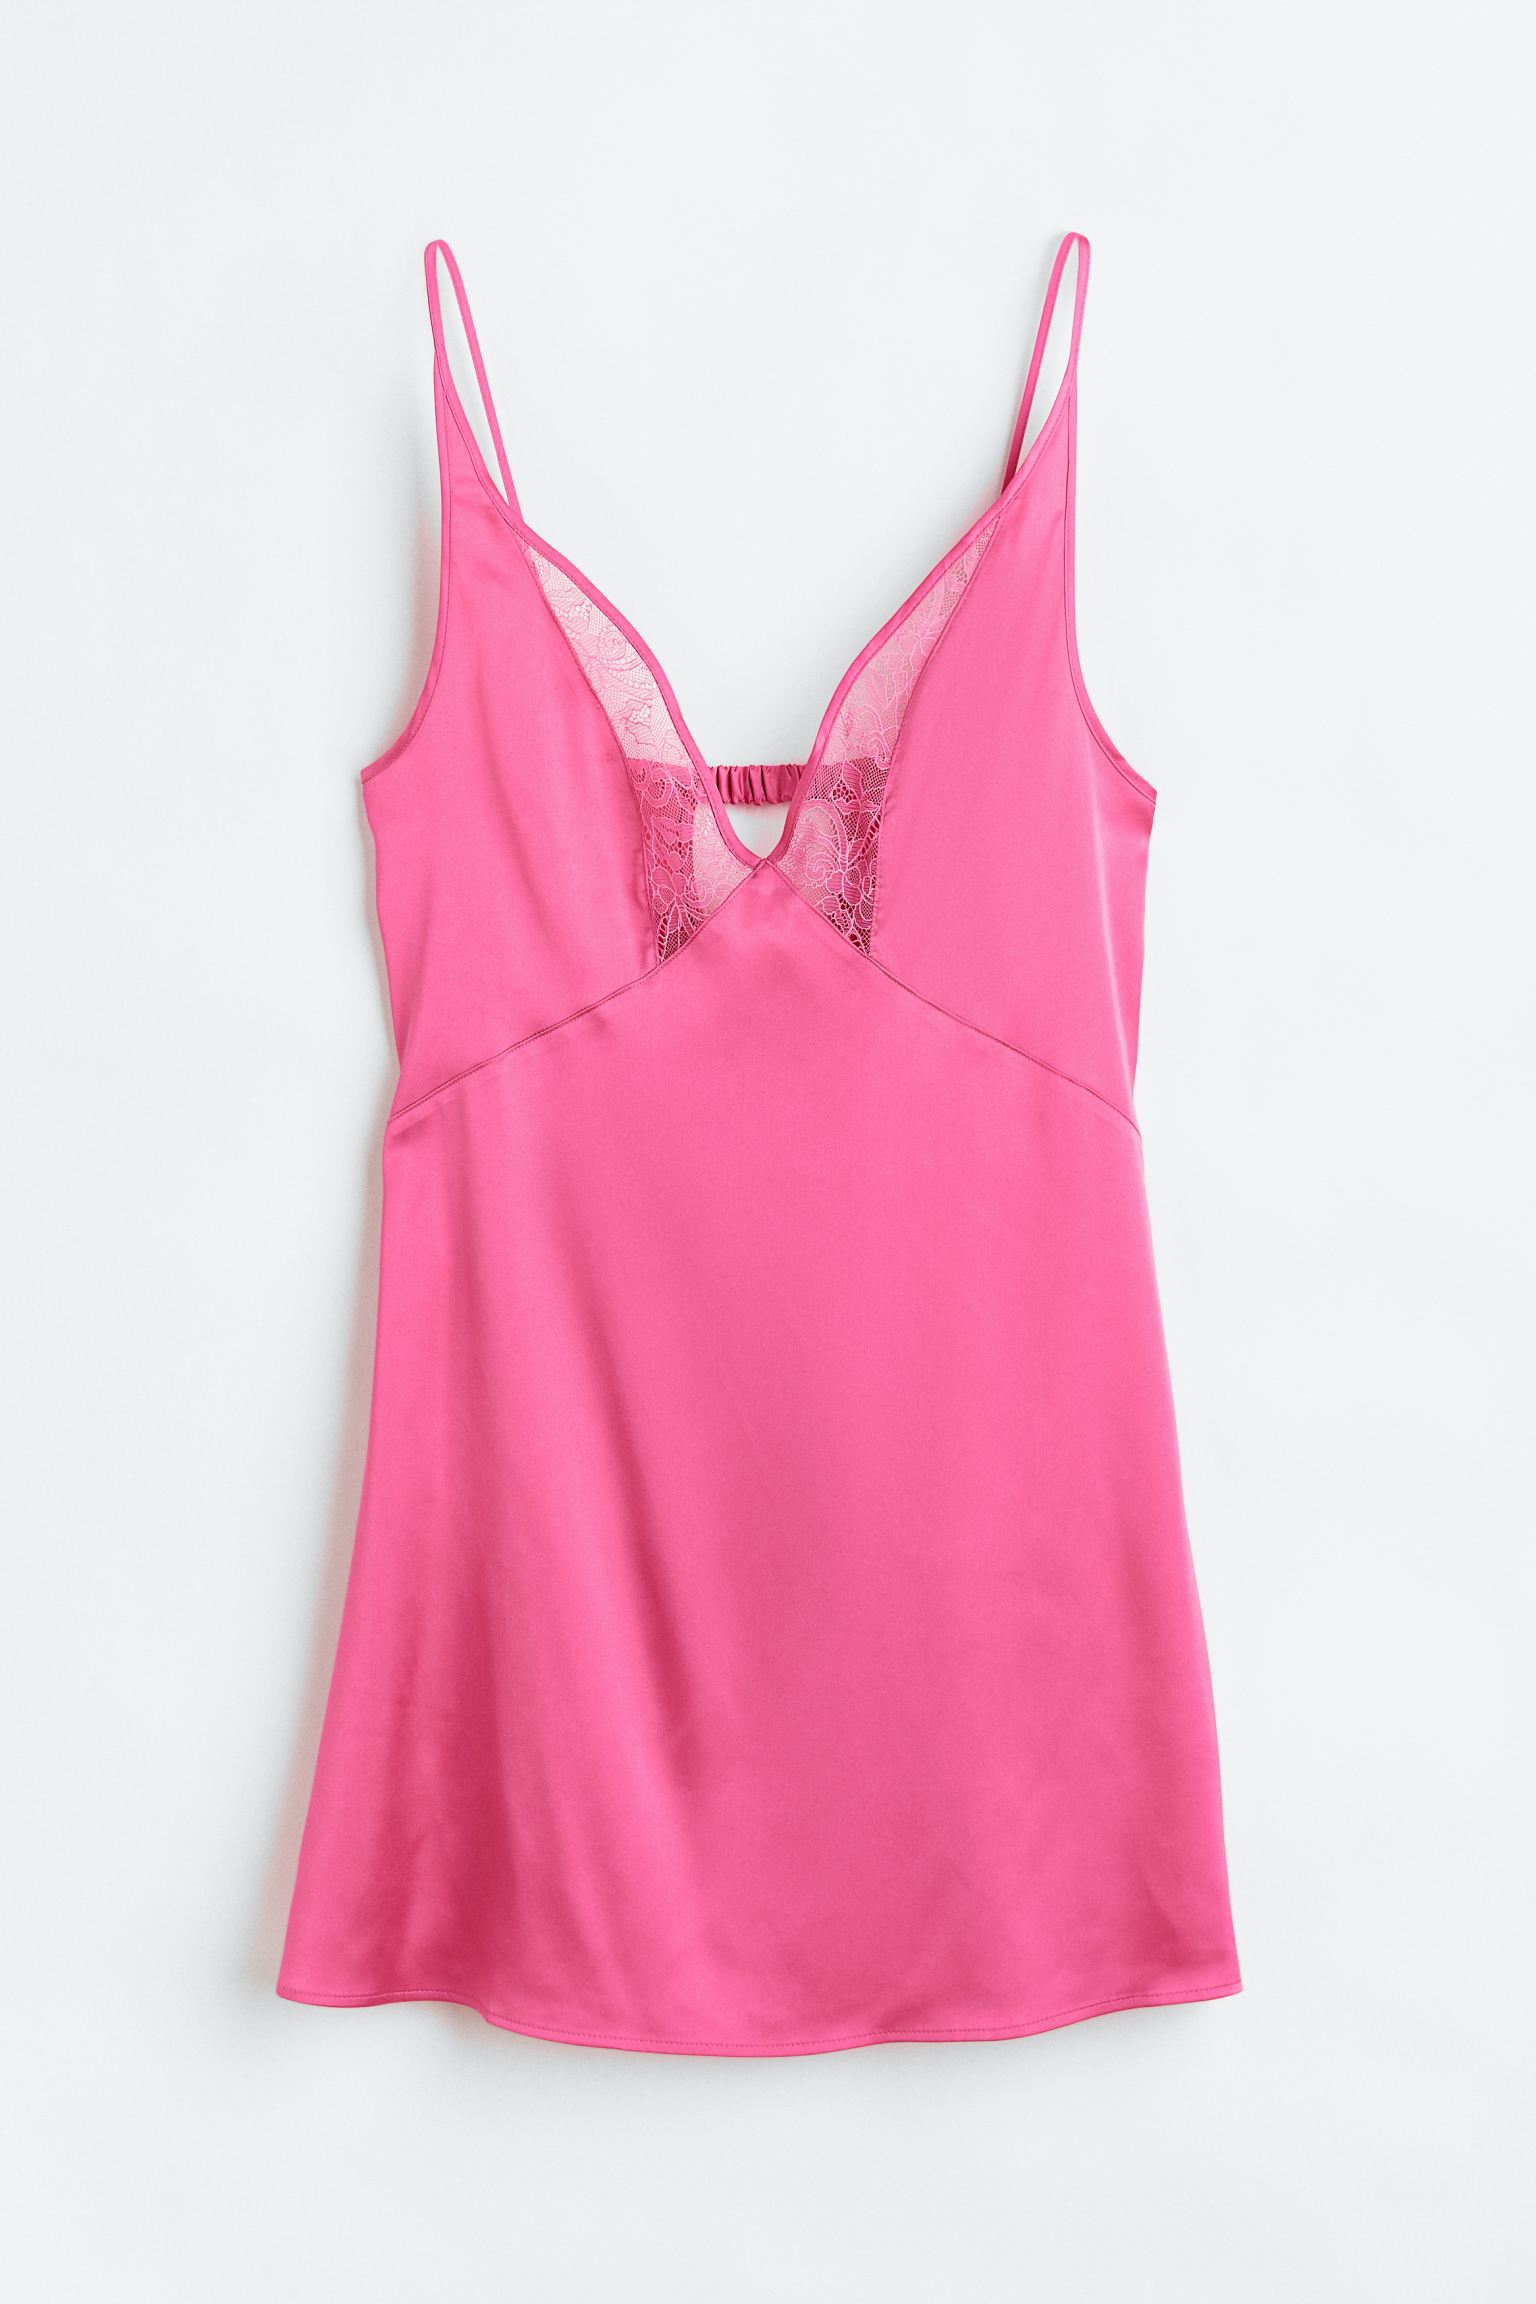 Ночная сорочка женская H&M 1139521004 розовая XS (доставка из-за рубежа)